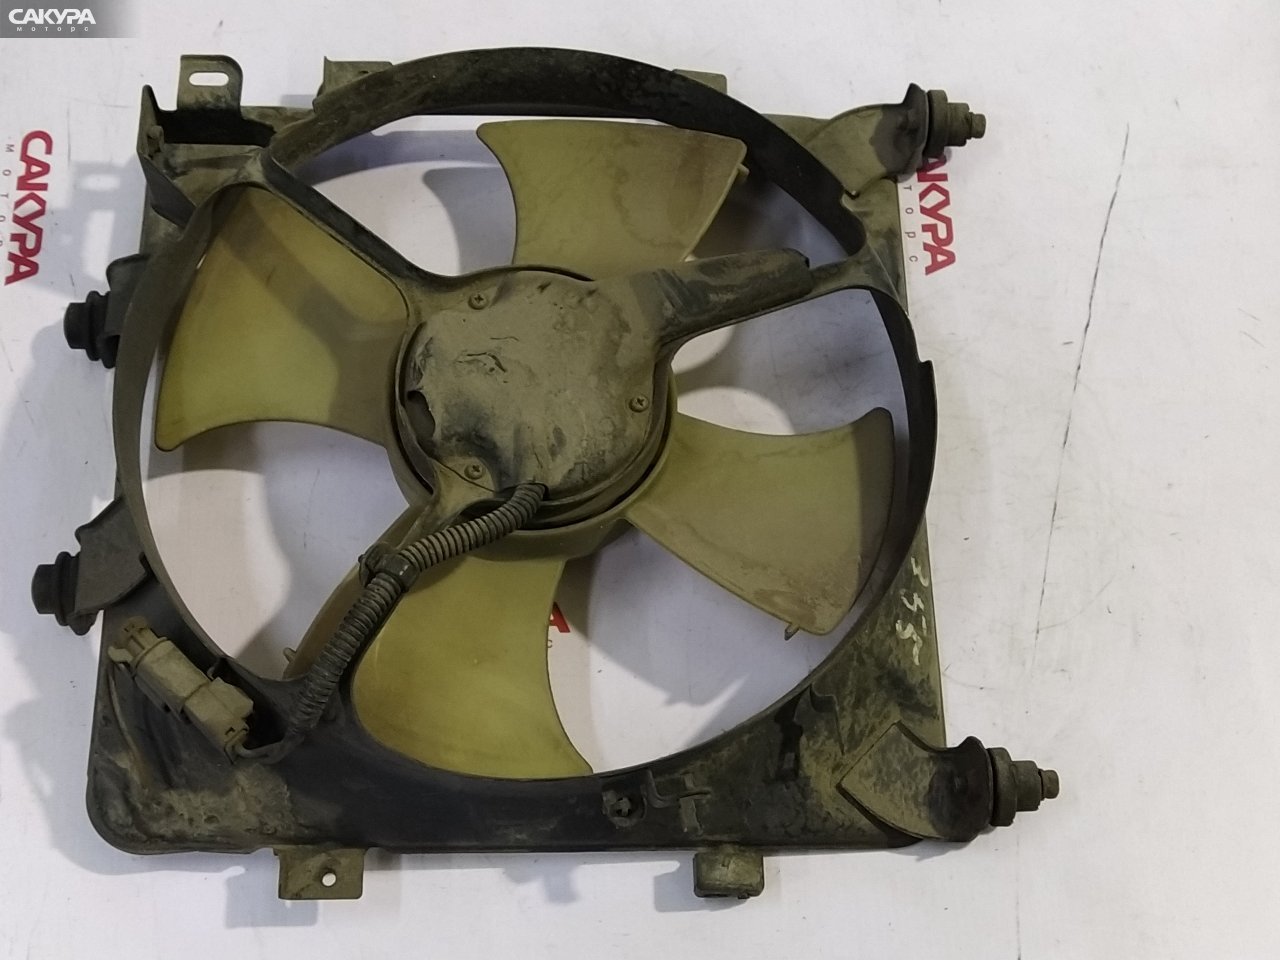 Вентилятор радиатора двигателя Honda Civic EG3 D13B: купить в Сакура Красноярск.